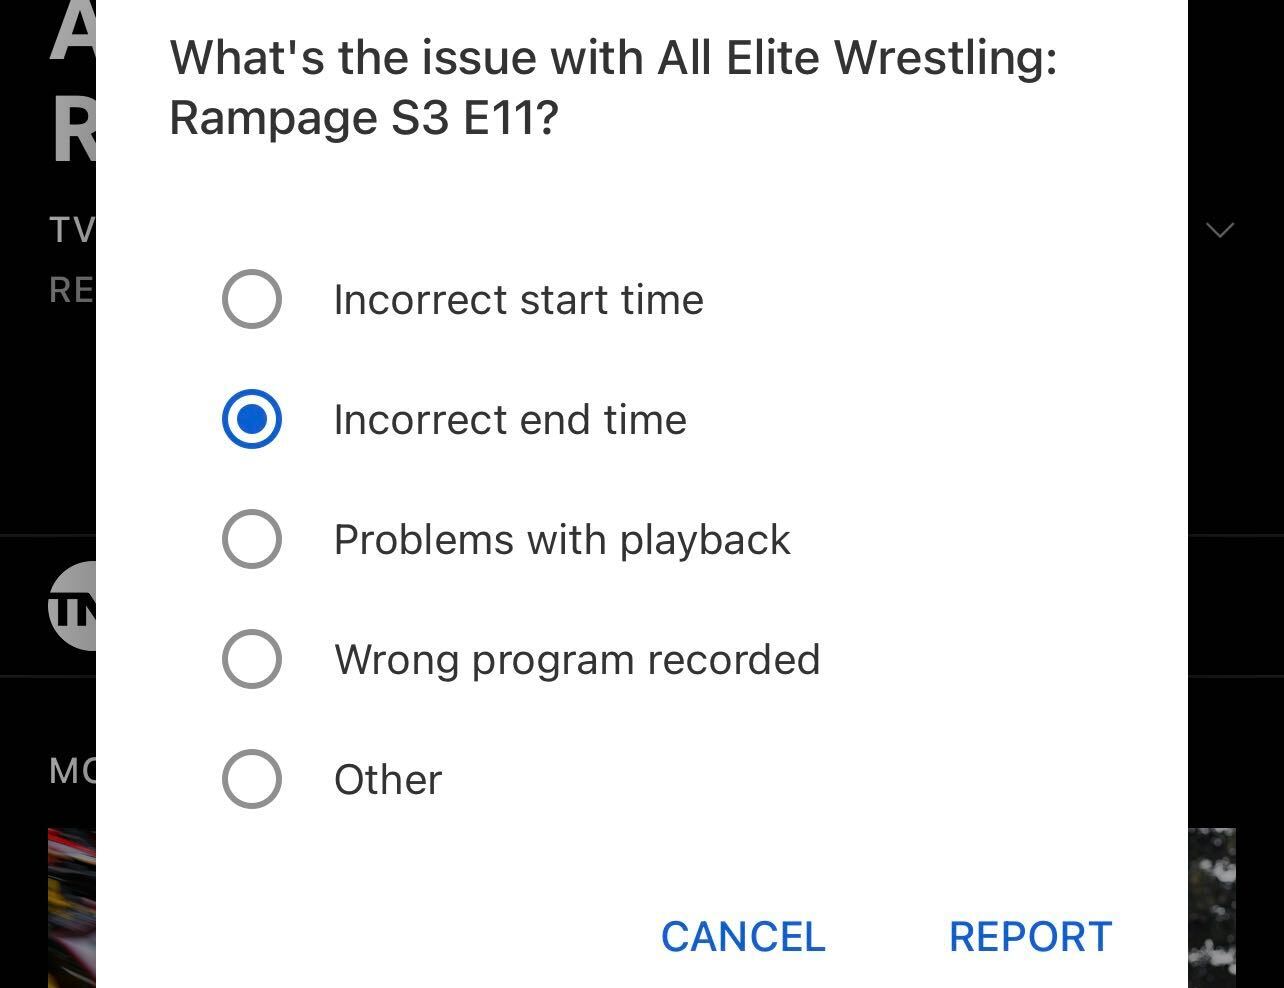 Una ventana emergente de YouTube TV para informar de un problema con una grabación del programa de televisión All Elite Wrestling: Rampage S3 E11 con el 